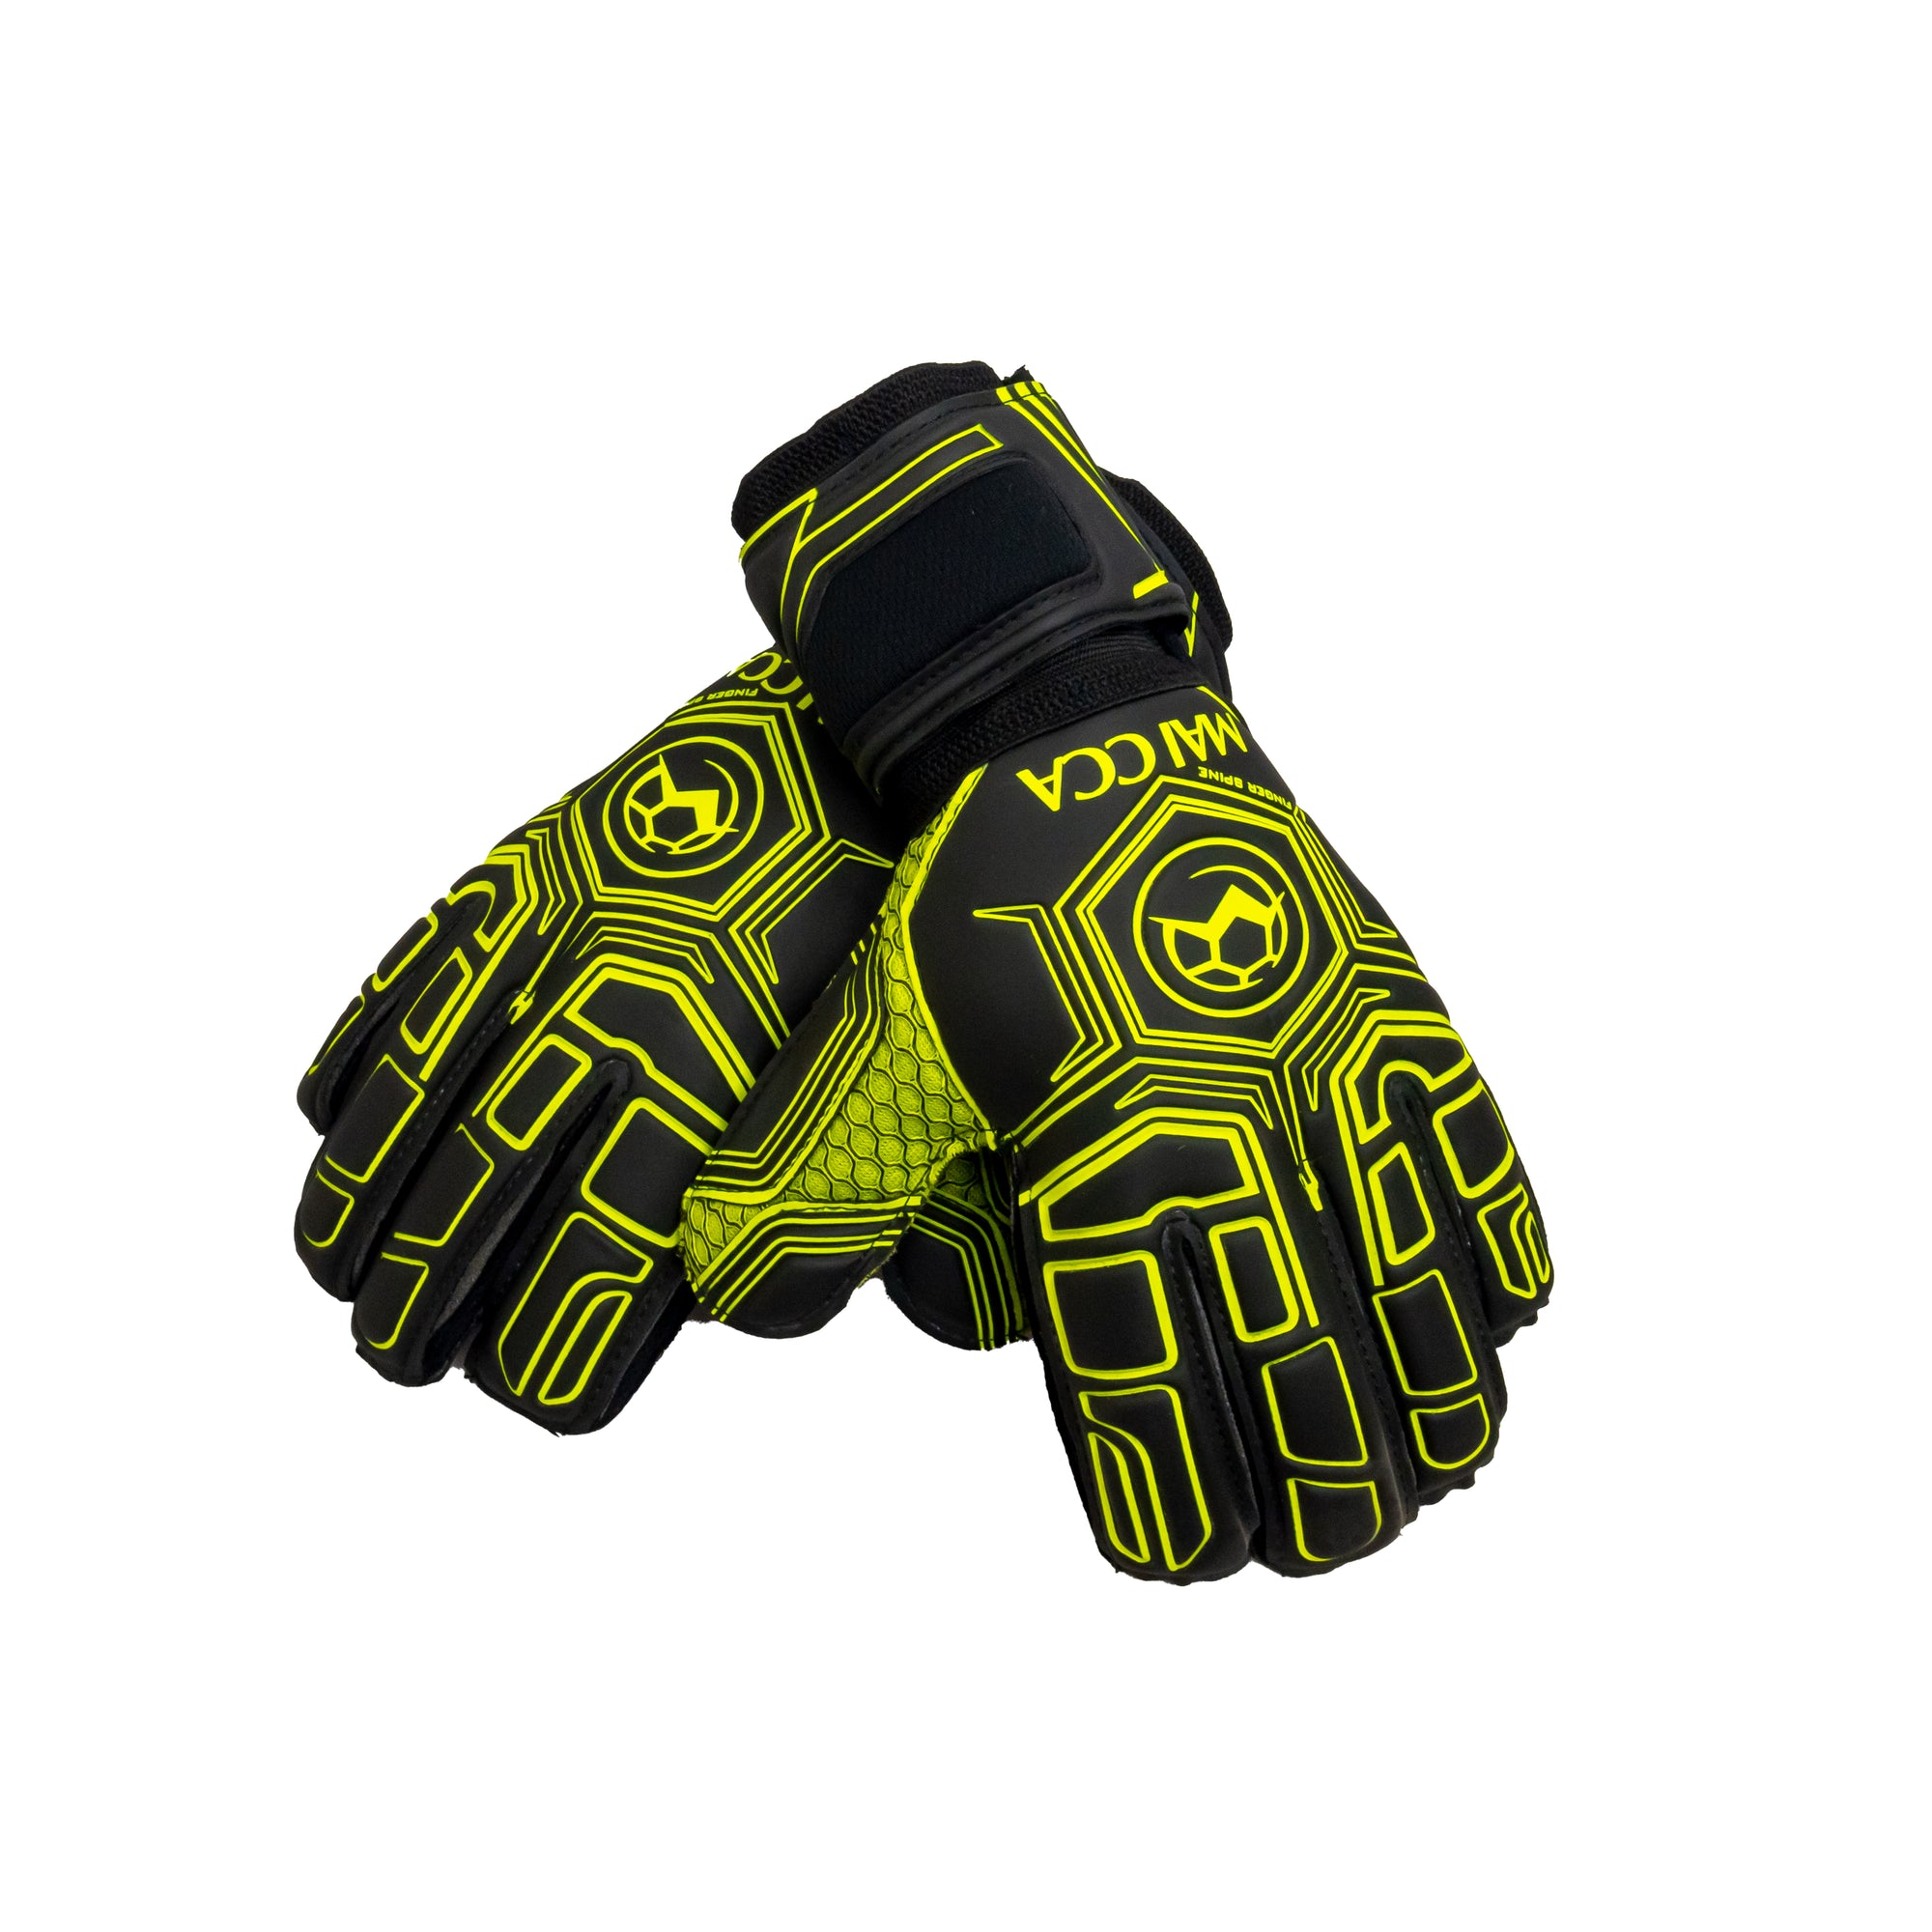 Finger Spine Goalkeeper Gloves Black/Green